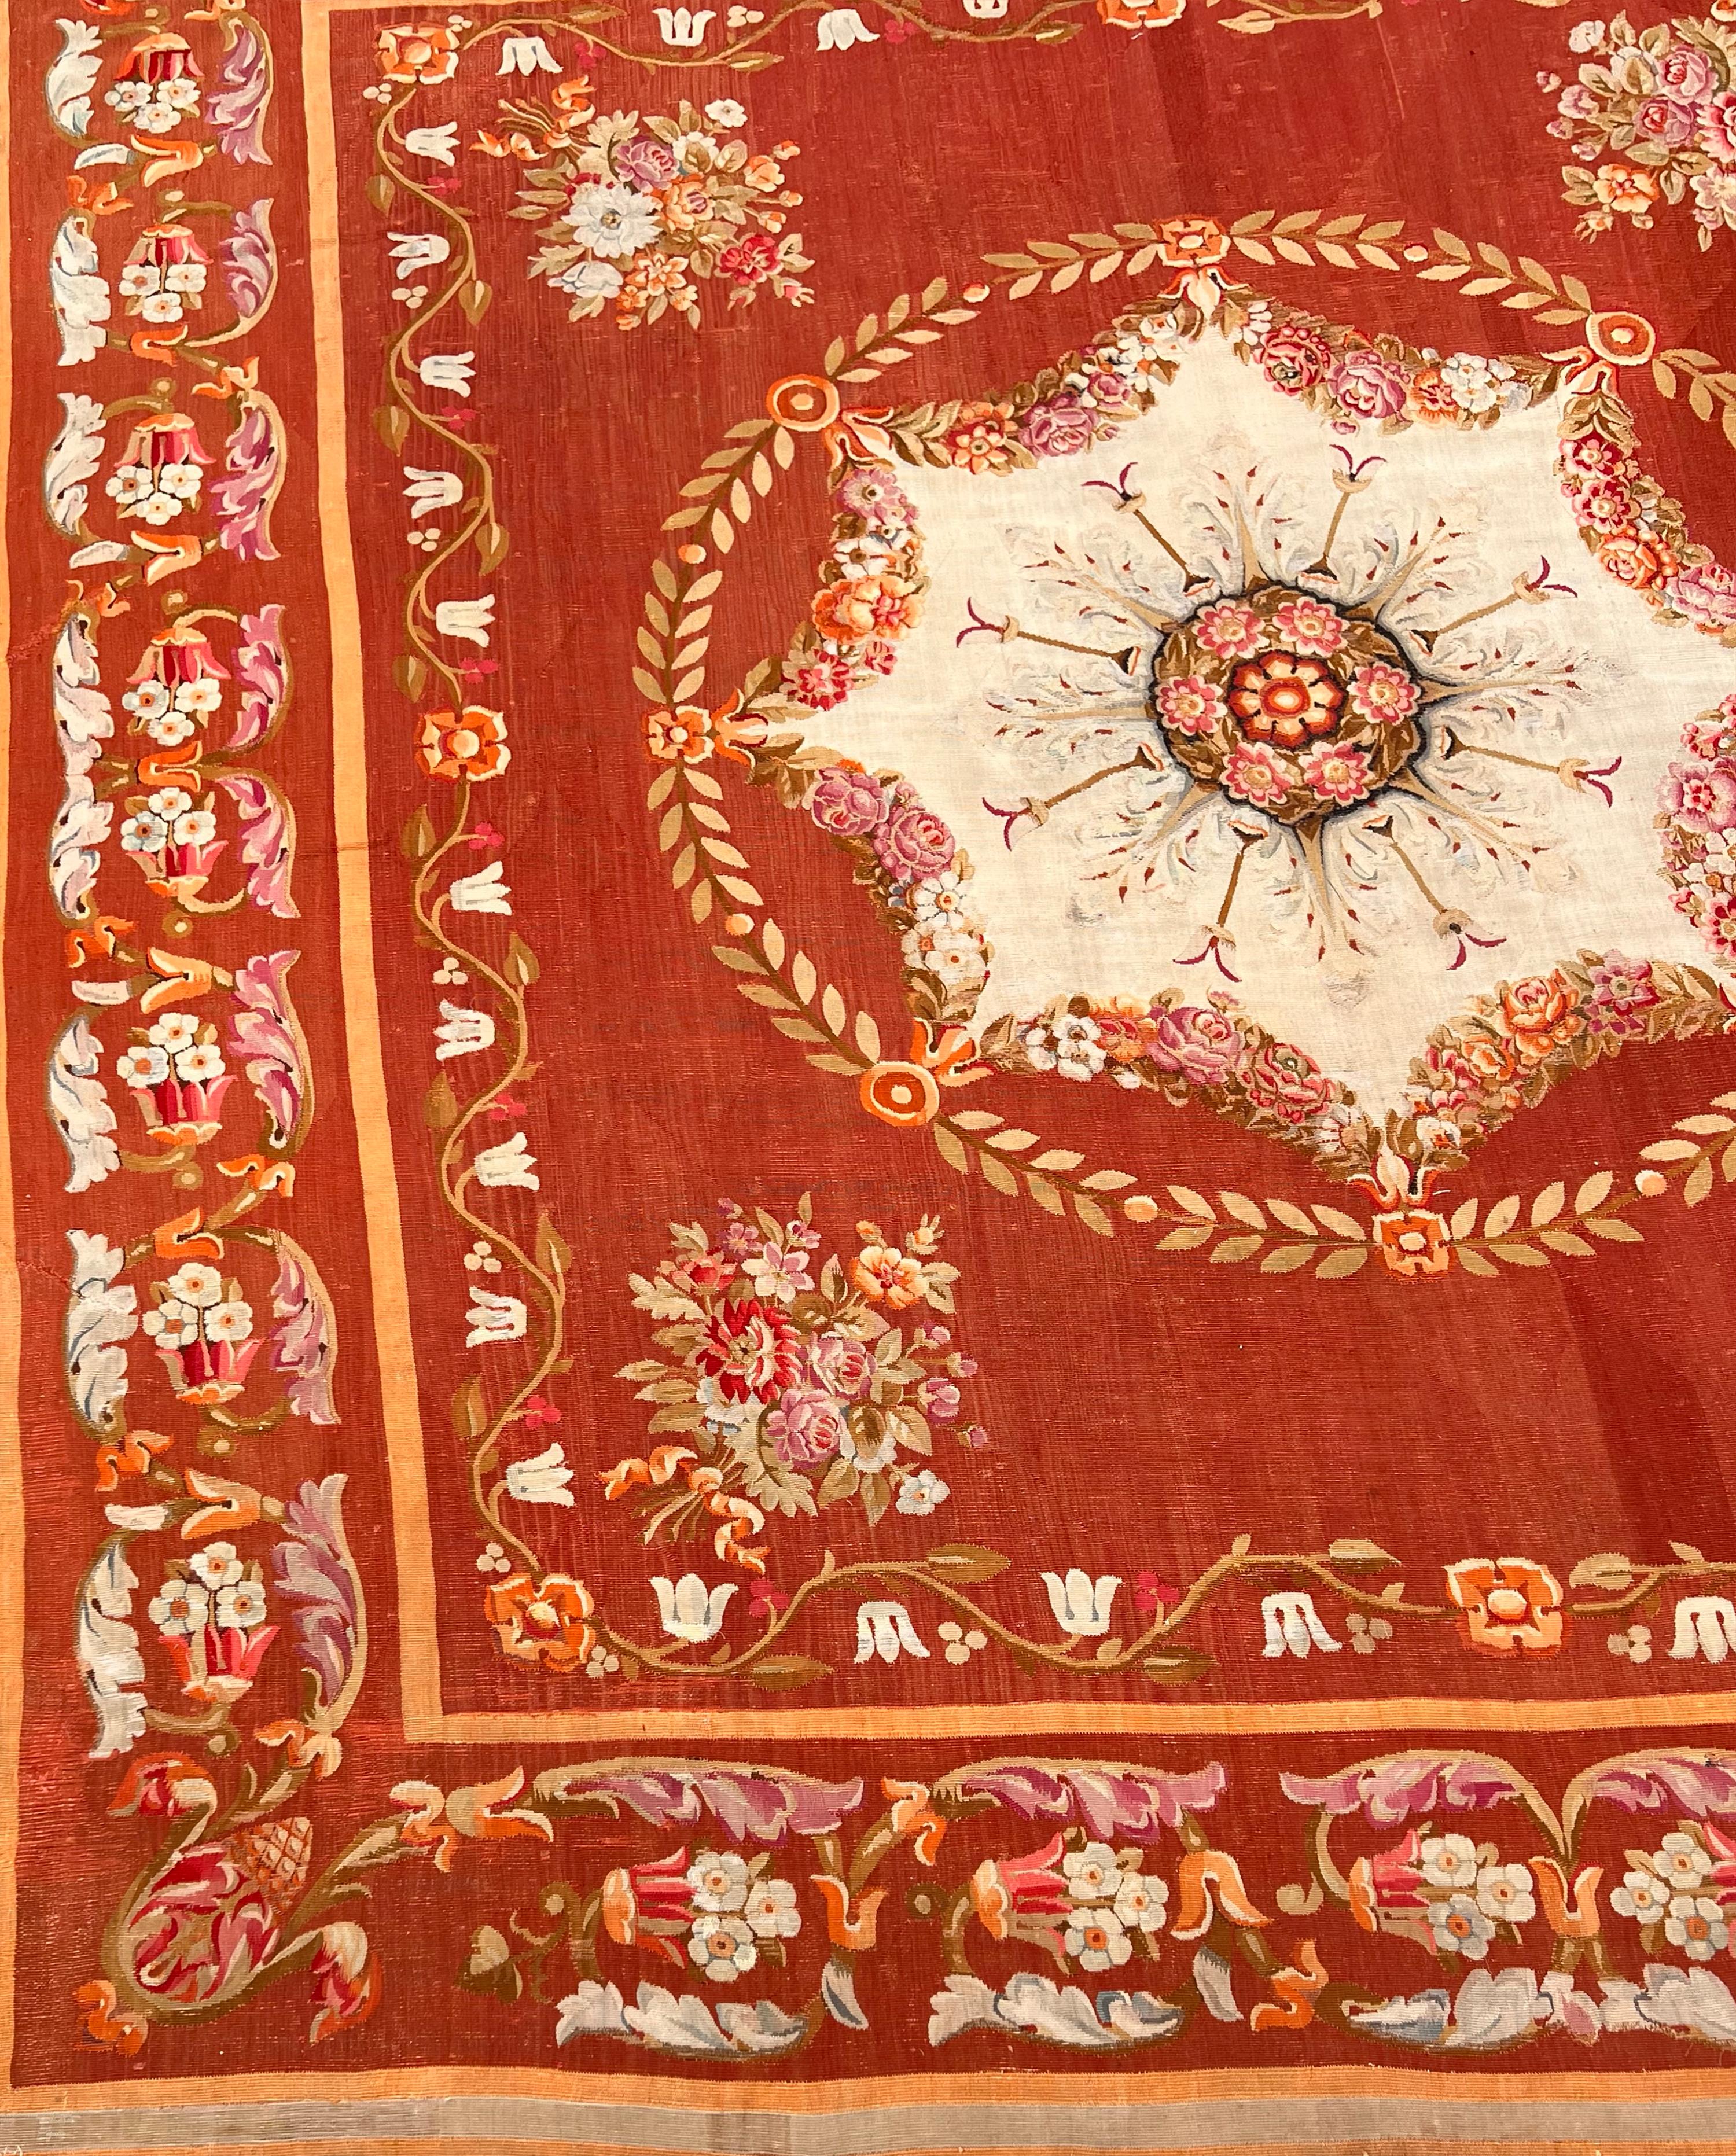 Ein bemerkenswert gut erhaltener und farbenprächtiger Teppich aus dem Neoklassizismus des frühen 19.  Ein burgunder- und zimtfarbenes Feld wird von einer melonenfarbenen Bordüre mit floralen und akanthusförmigen Mäandern begrenzt.  Blumensträuße in